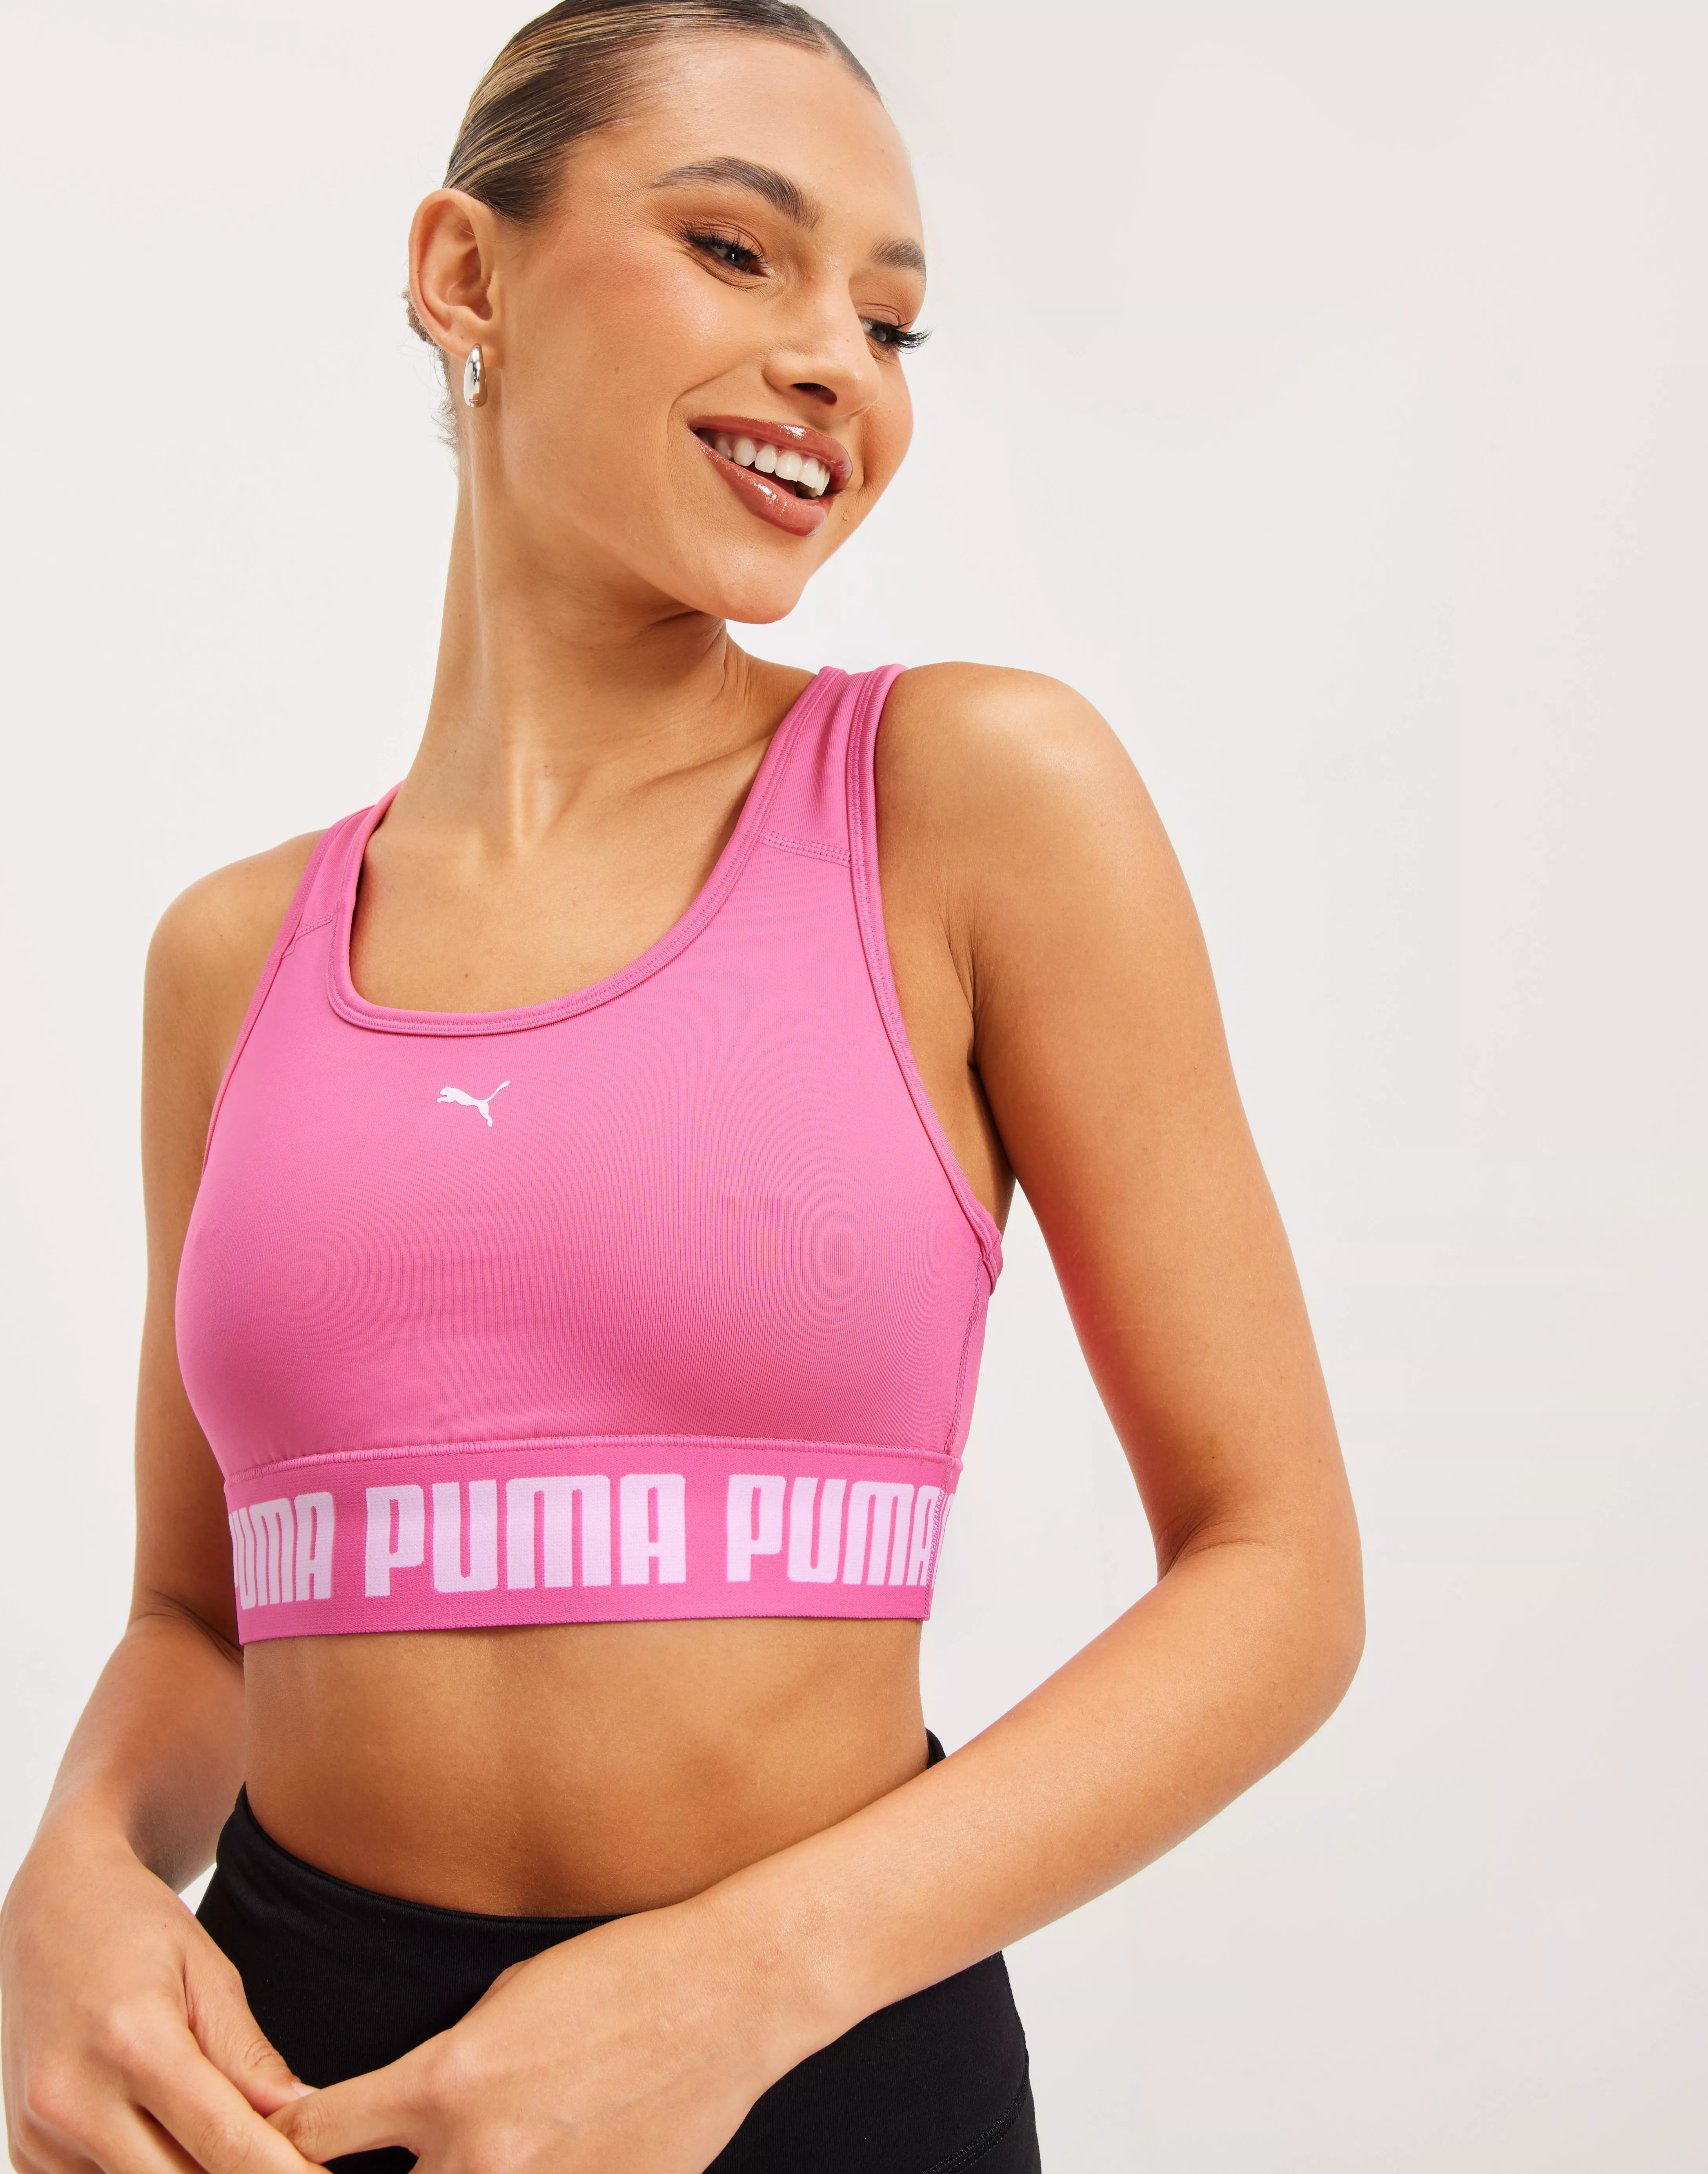 Puma Sports Bra 12.99 $12.99